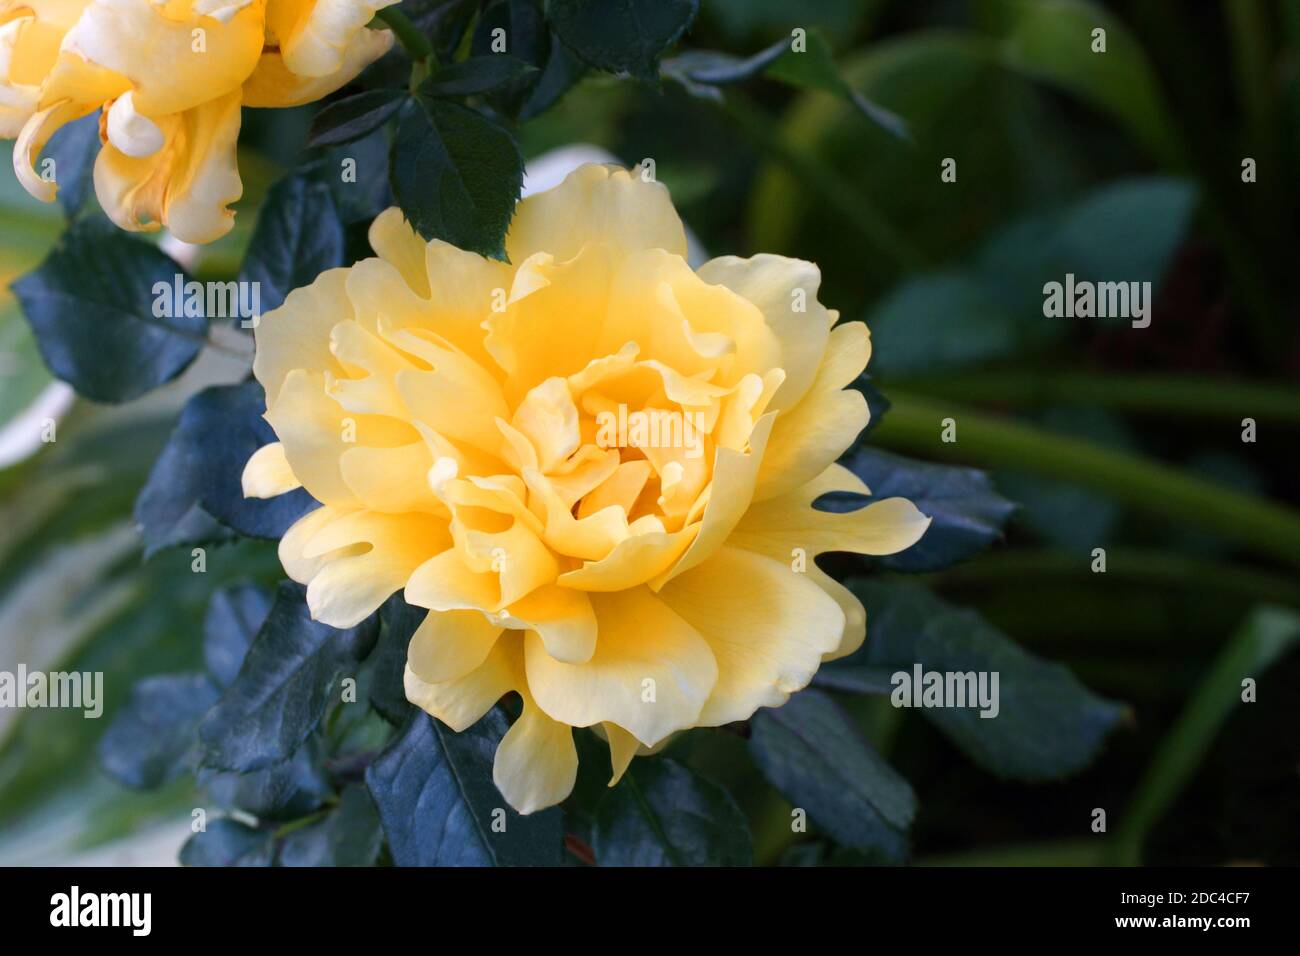 Rosa Splendid Ruffles schöne gelbe Rose Nahaufnahme. Blumen, in einem Garten in natürlichen Bedingungen im Grünen, unter dem offenen Himmel. Stockfoto